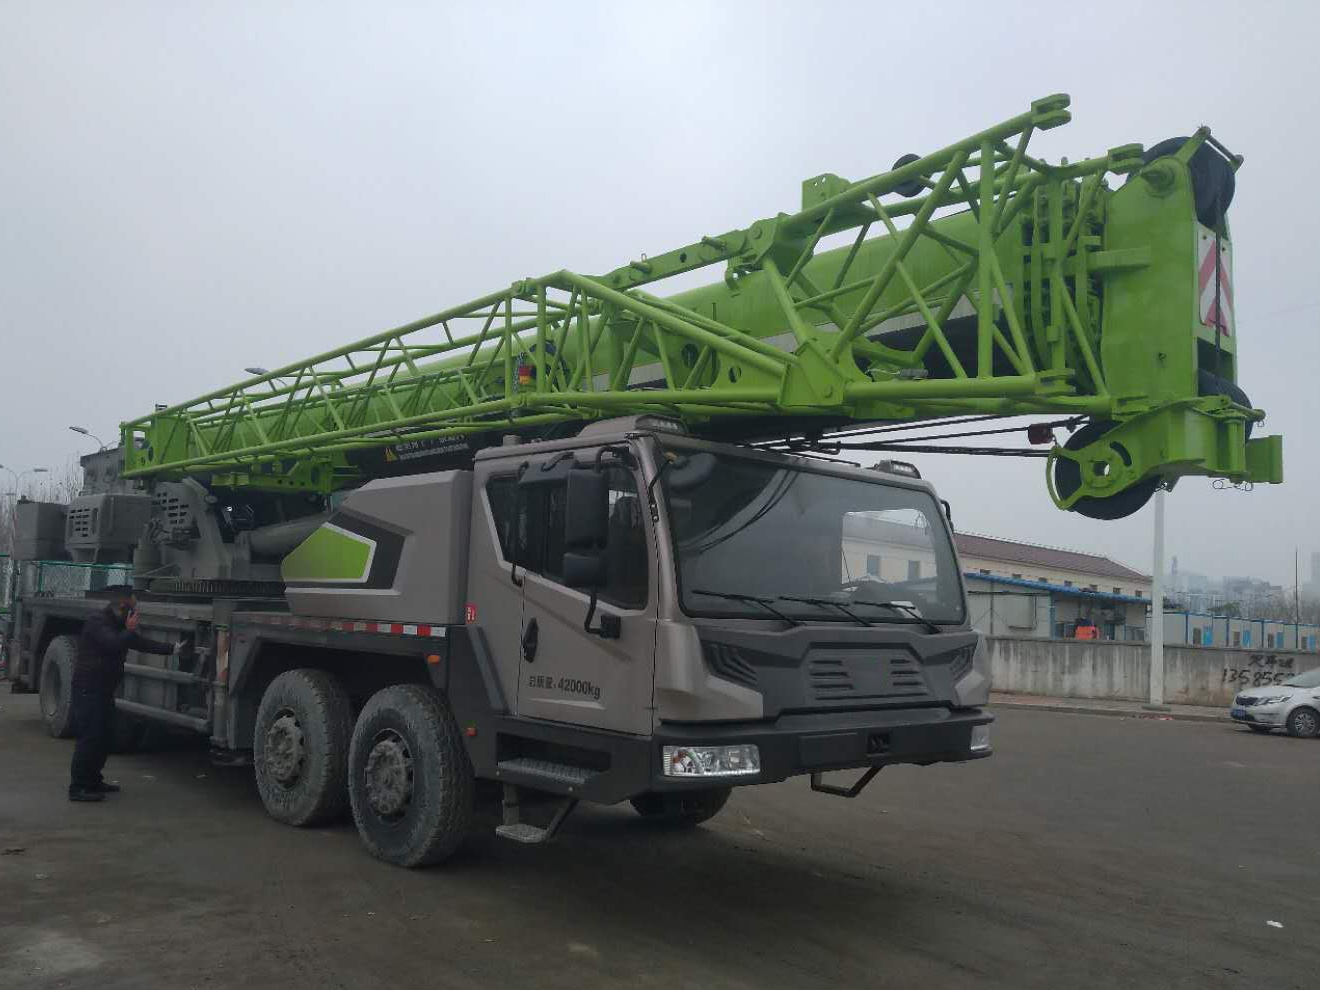 
                Zooomliion Ztc550r532 55 ton kraan voor zware trucks met kabellier
            